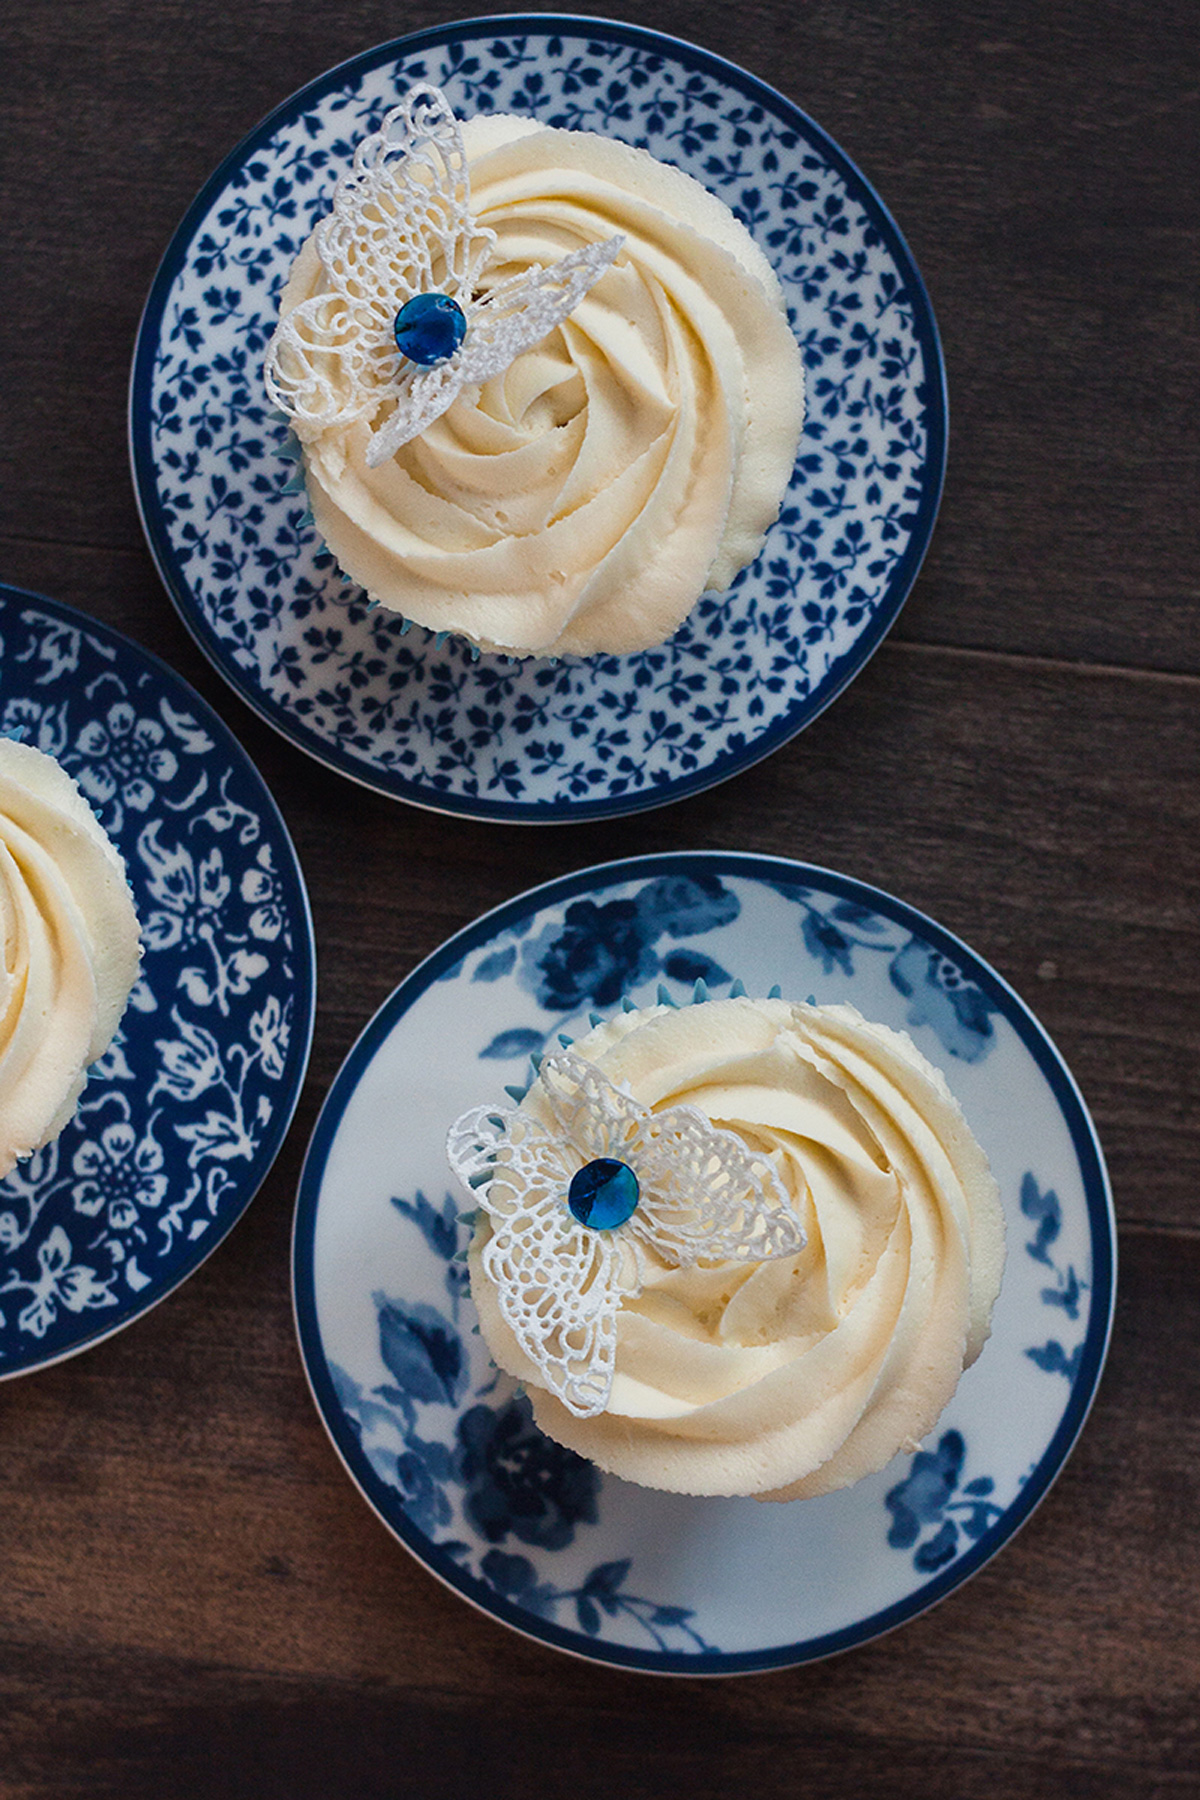 Создание ванильно-лавандовых капкейков - одного из самых любимых десертов в Великобритании. Кулинарные уроки в магазине Promenu с Марией Каленской.